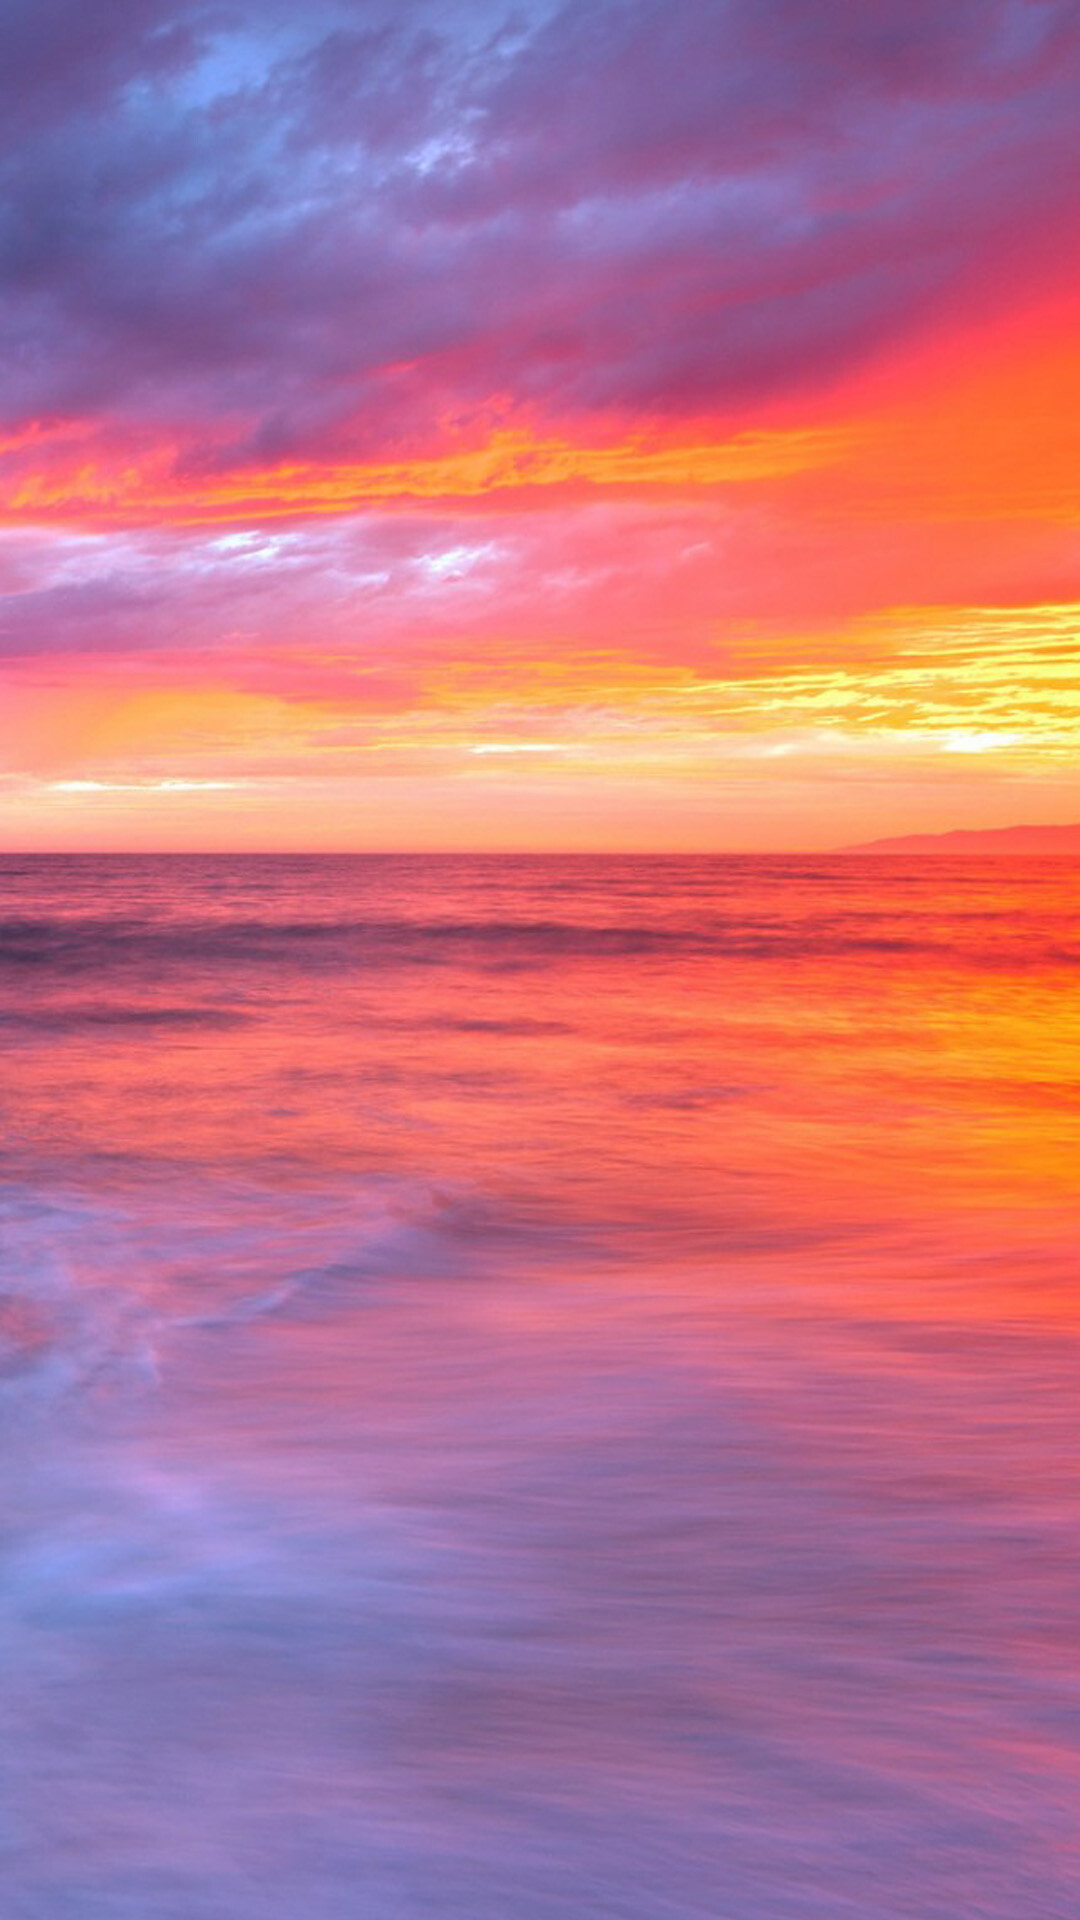 Sunset: Pink sundown, The scattering of sunlight, Dusk. 1080x1920 Full HD Wallpaper.